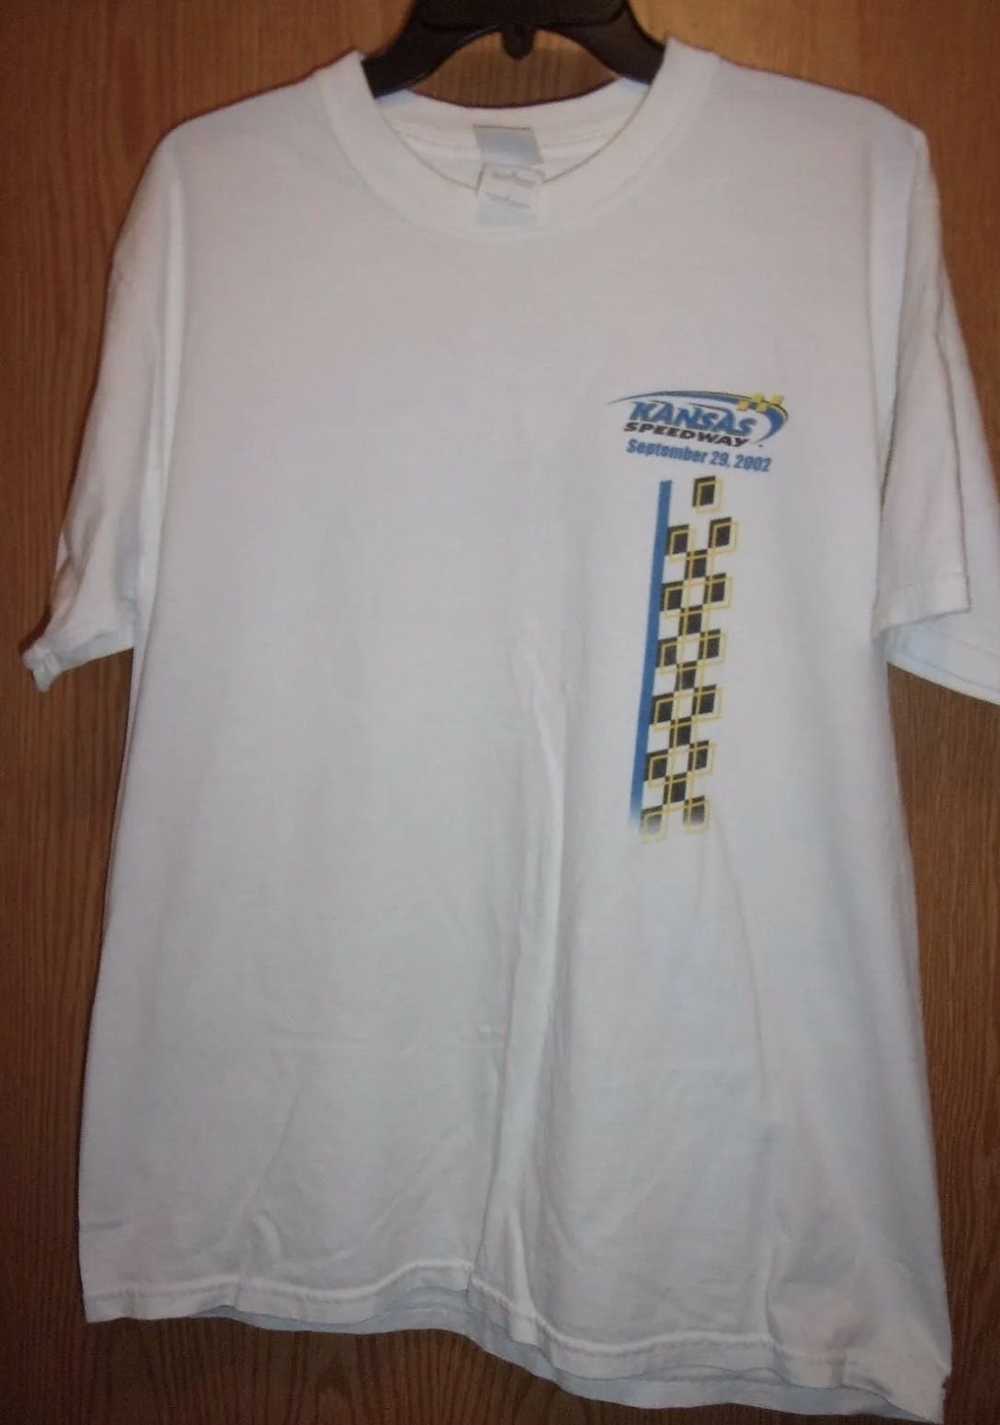 Vintage Kansas Speedway 2002 Nascar Shirt - image 1